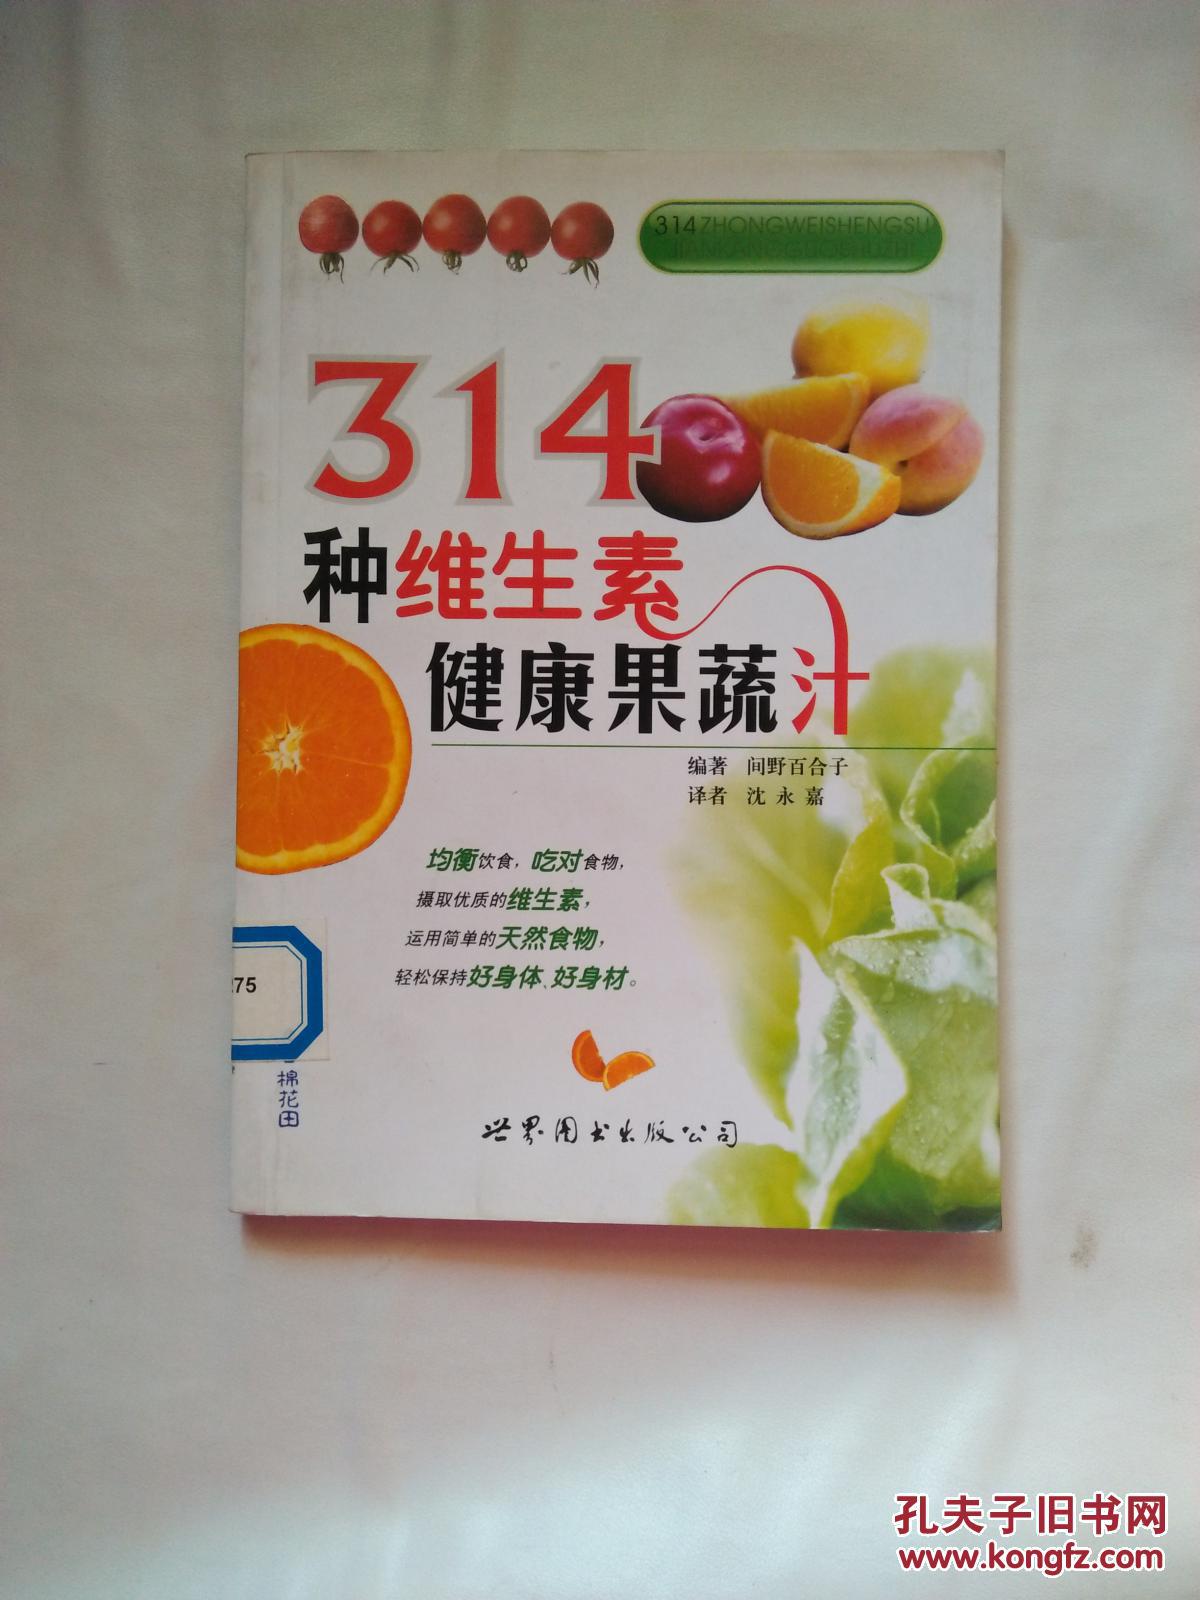 314种维生素健康果蔬汁【见描述 馆藏】